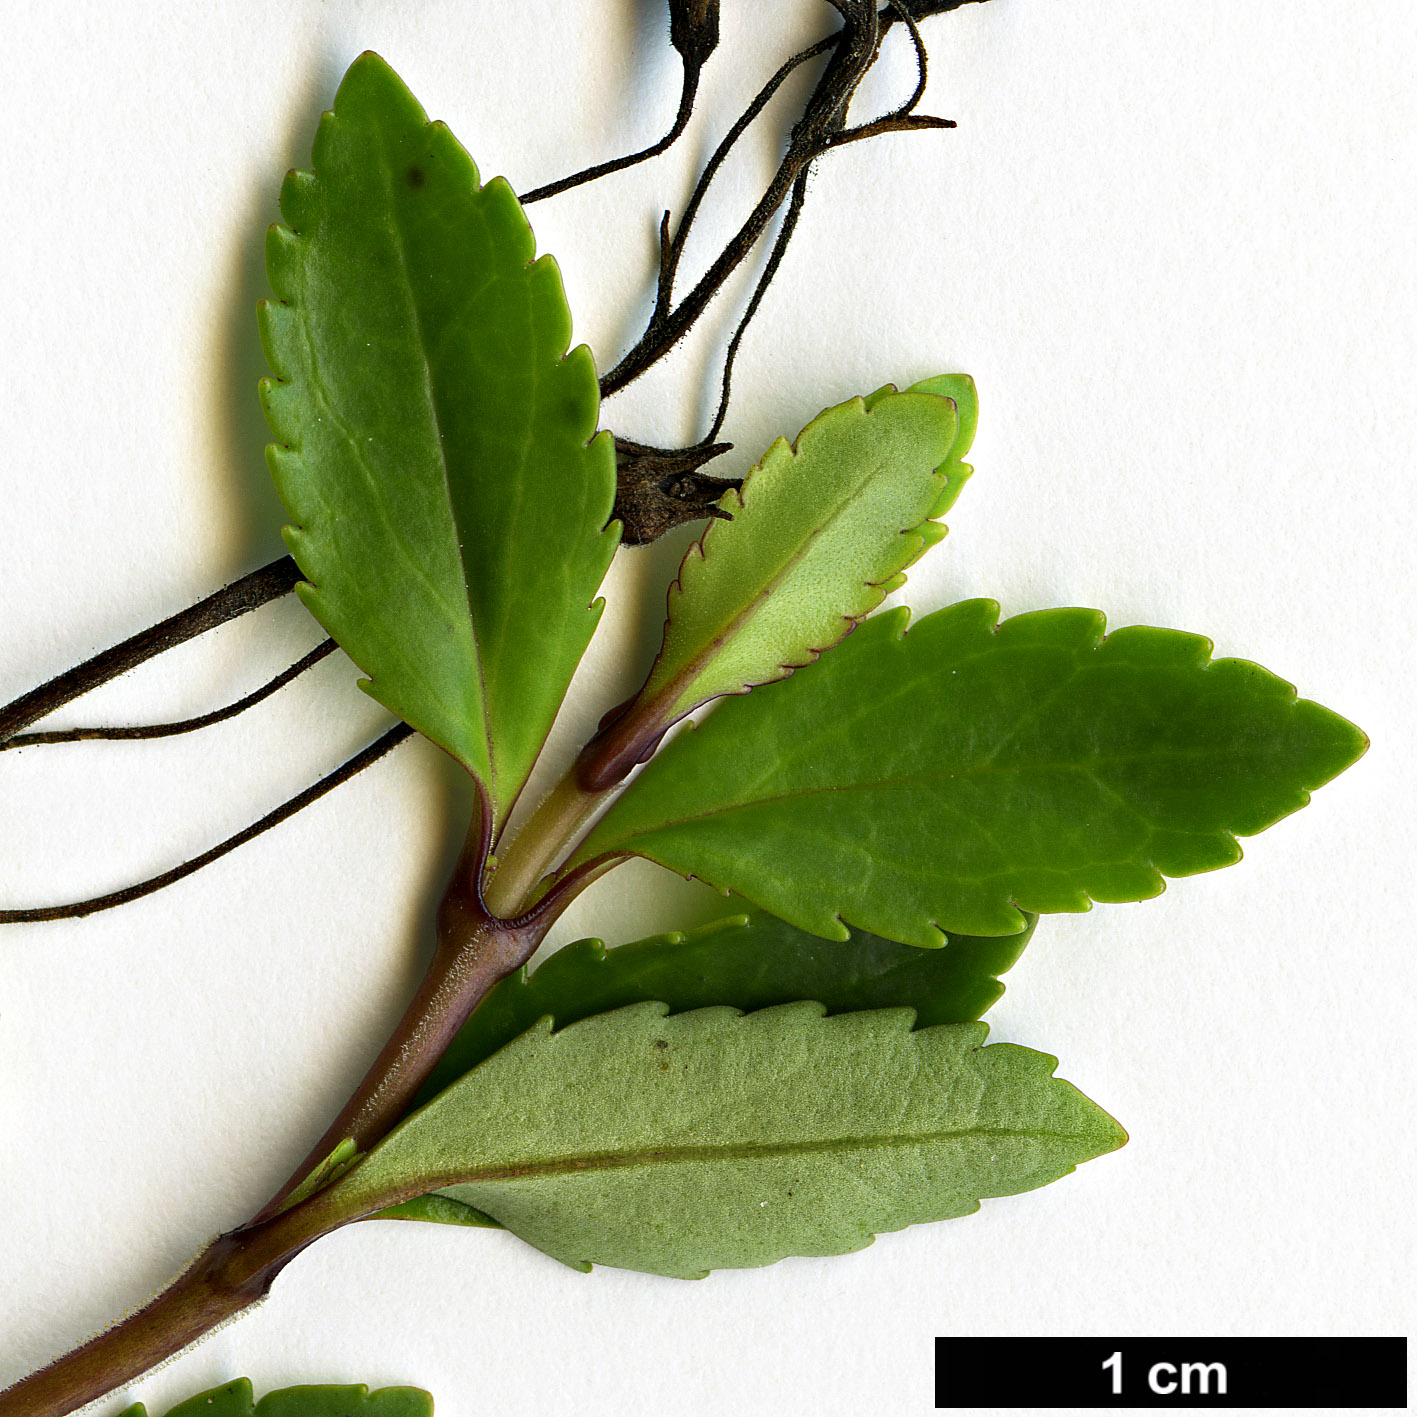 High resolution image: Family: Plantaginaceae - Genus: Parahebe - Taxon: cattaractae